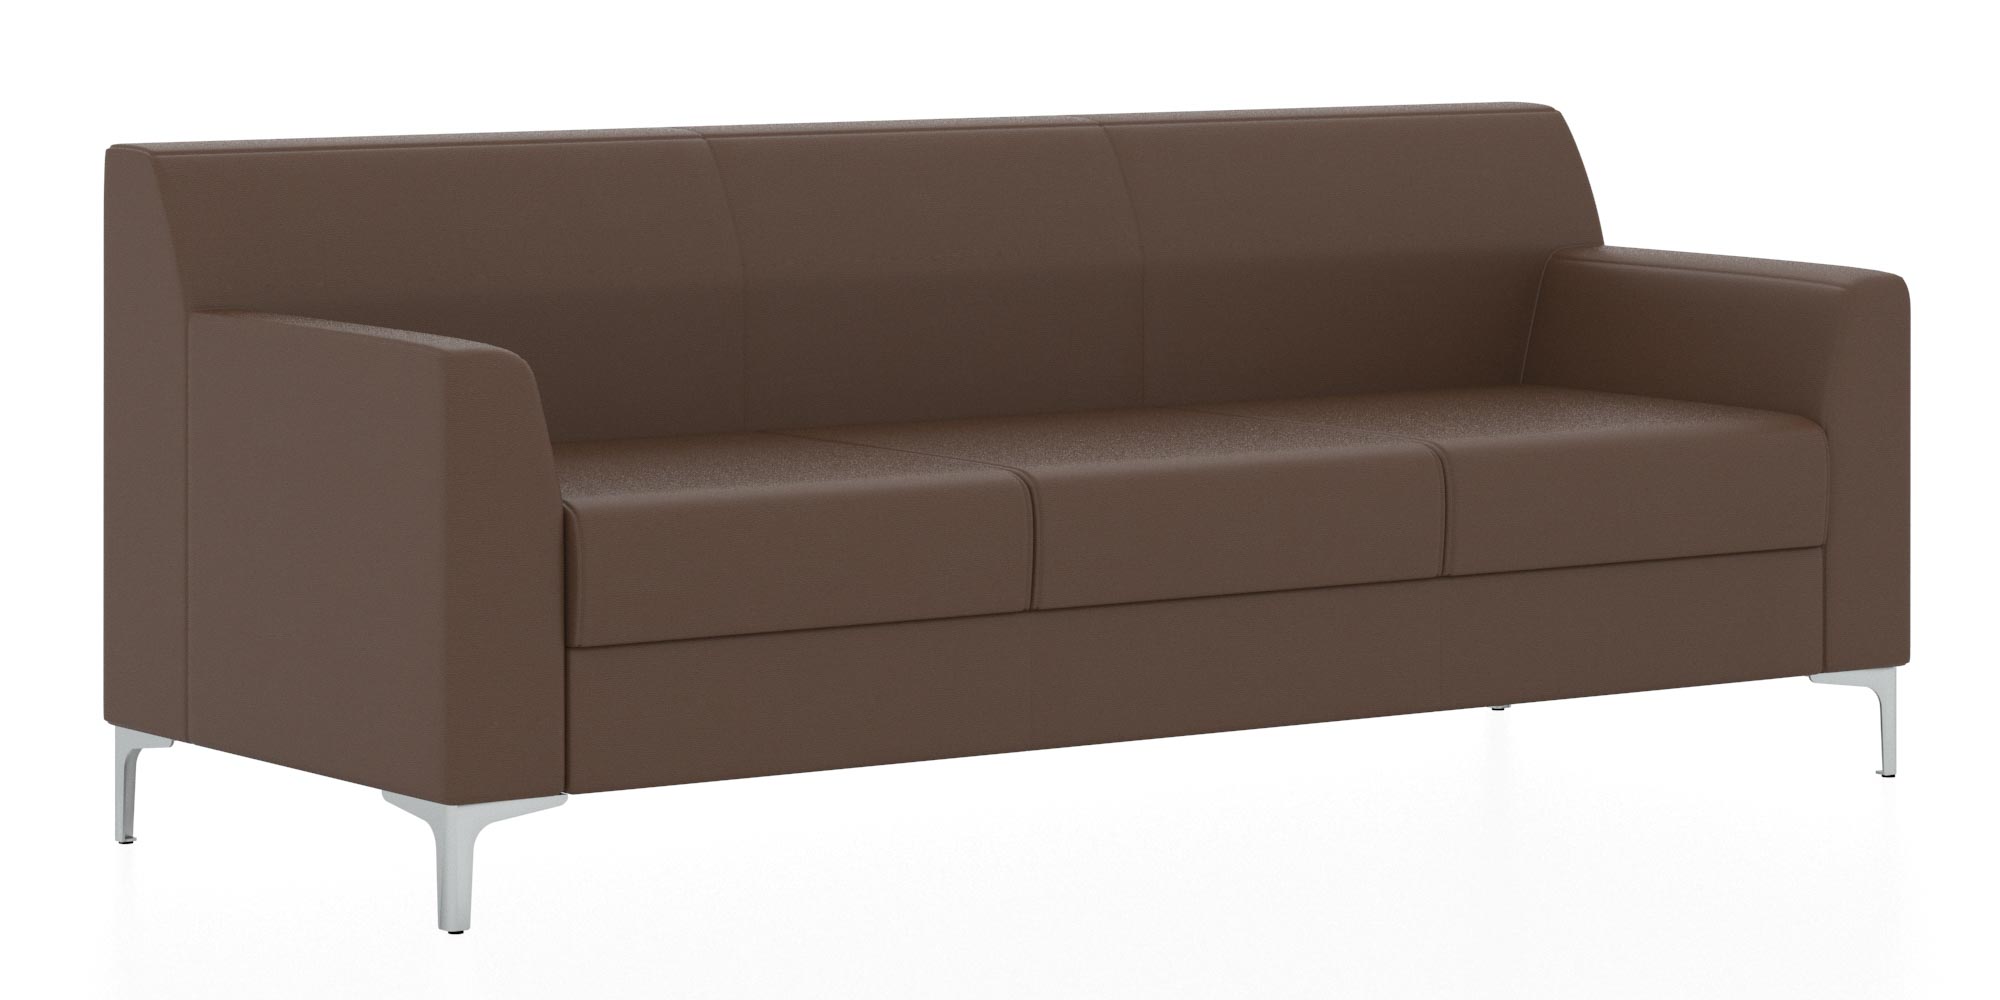 Классический двухместный диван. Обивка из кожзама коричневого цвета (Euroline 924)